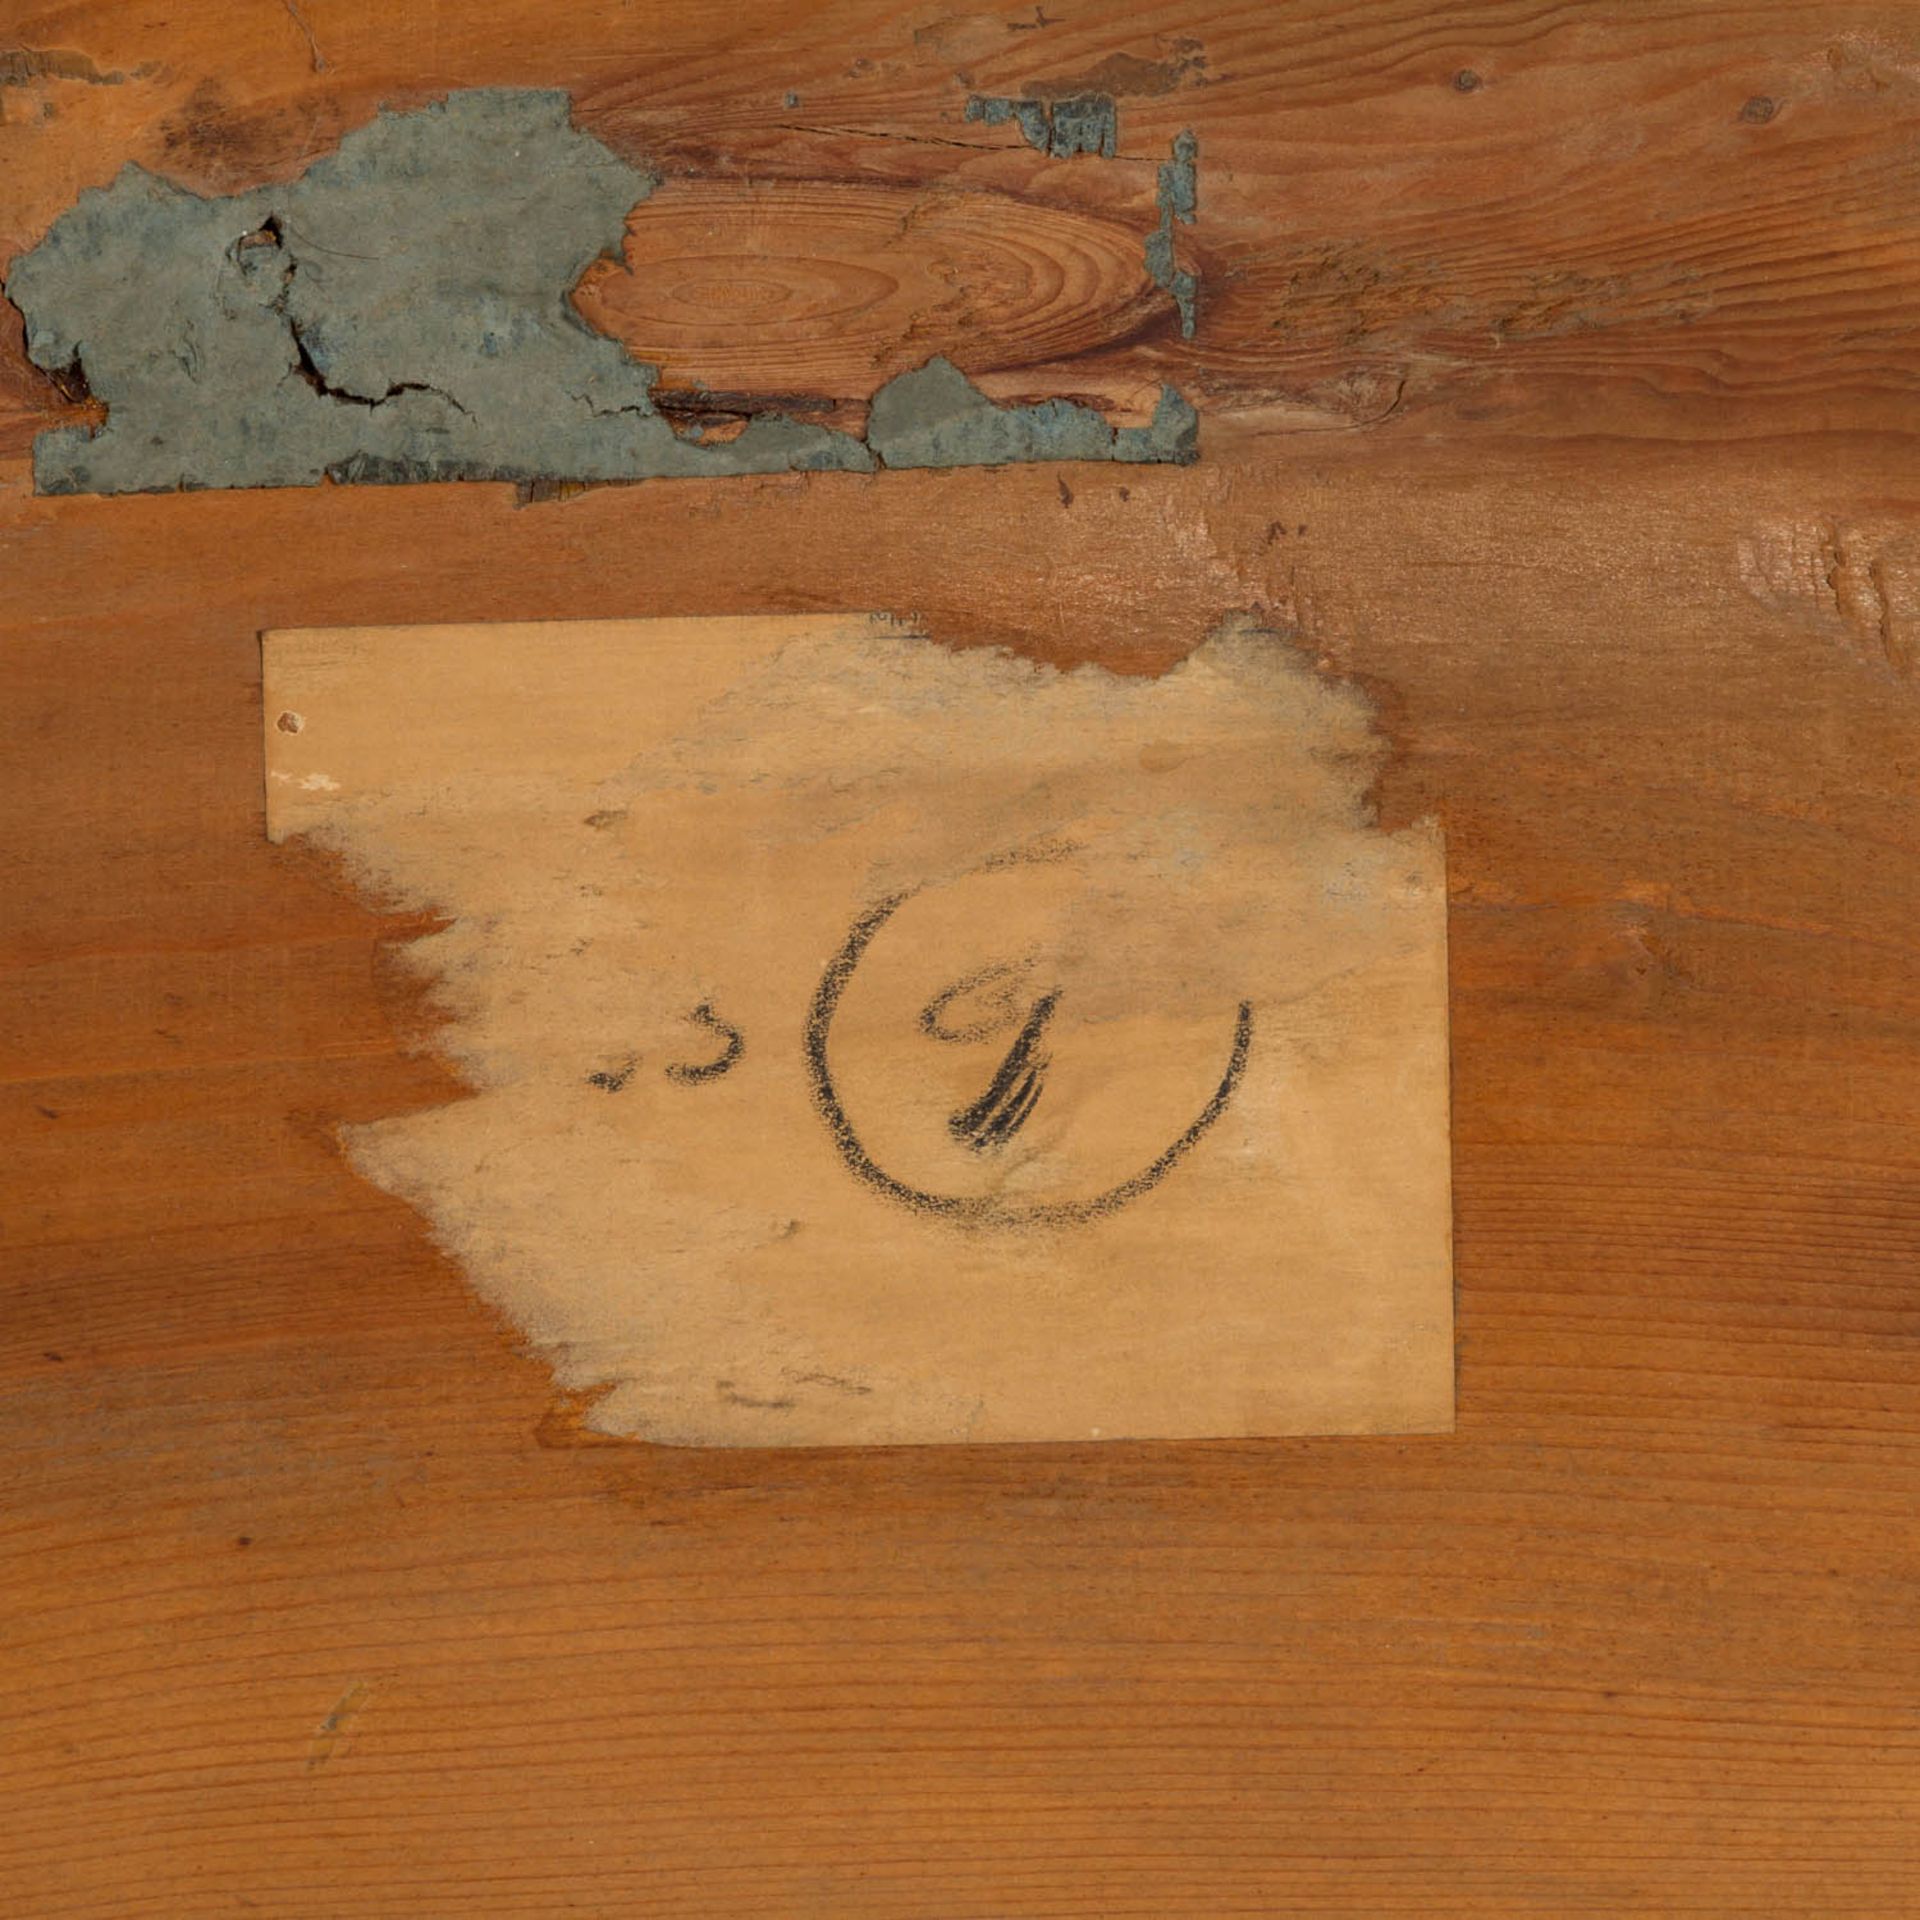 GROßER WANDSPIEGEL IM BAROCK-STIL, 2. Hälfte 19. Jh.,Holz geschnitzt, gestuckt und vergoldet, HxB: - Bild 3 aus 4